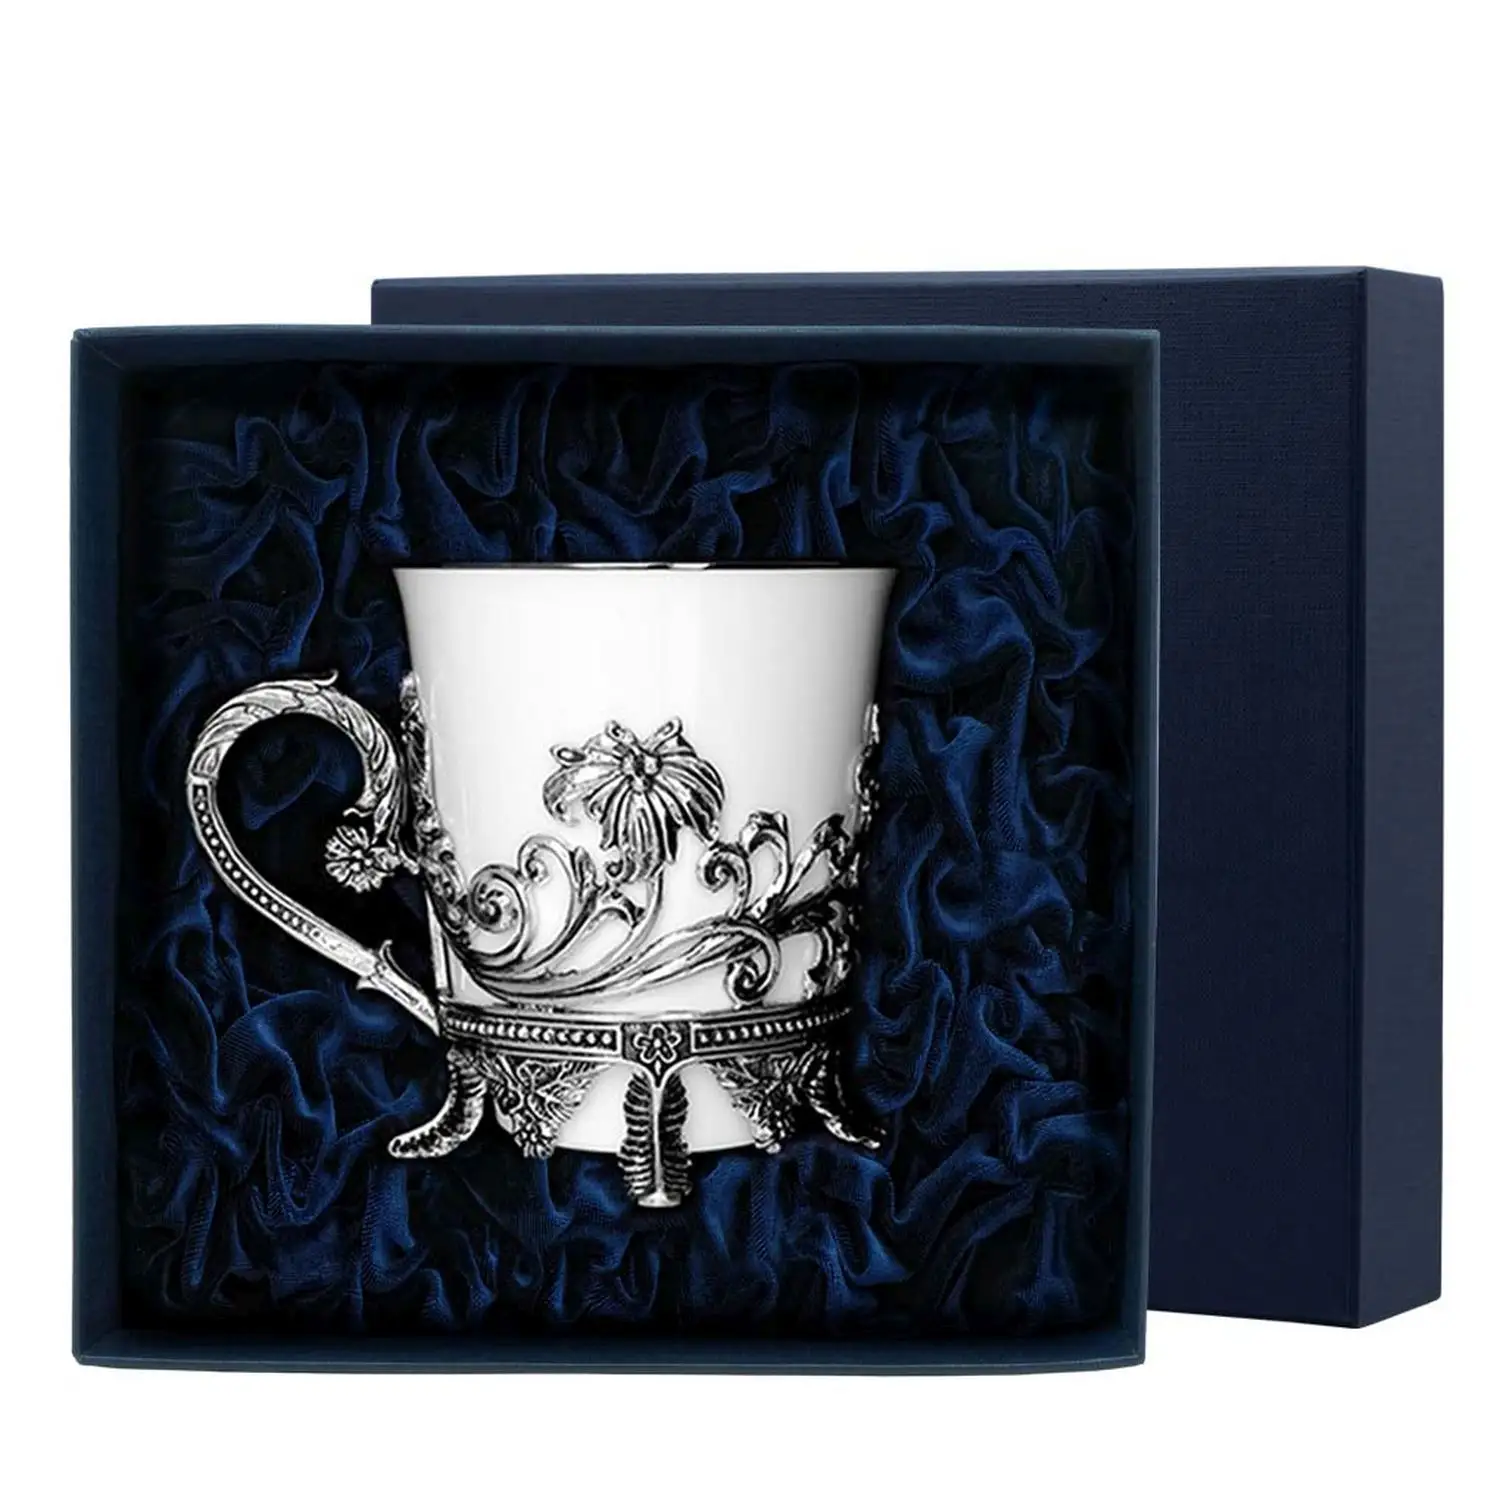 Чашка чайная Цветочная с чернением (Серебро 925) чашка чайная тетерев с чернением серебро 925